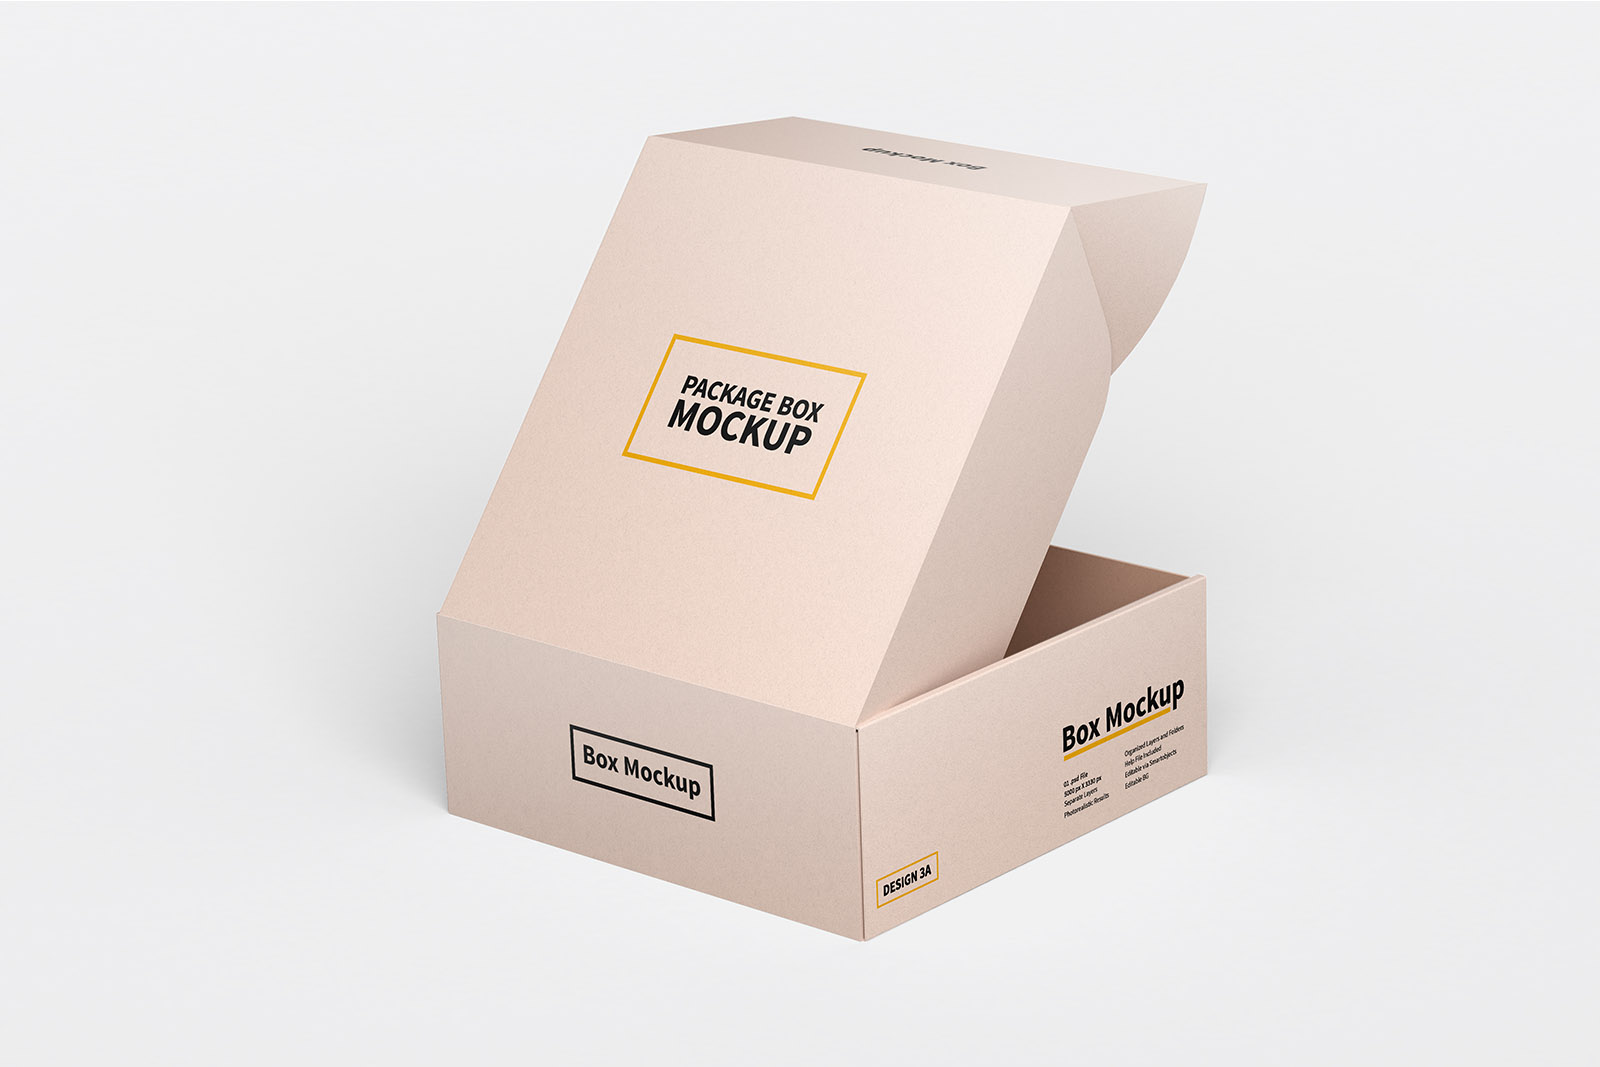 Download Square Box Packaging Mockup | shaikerintu.com